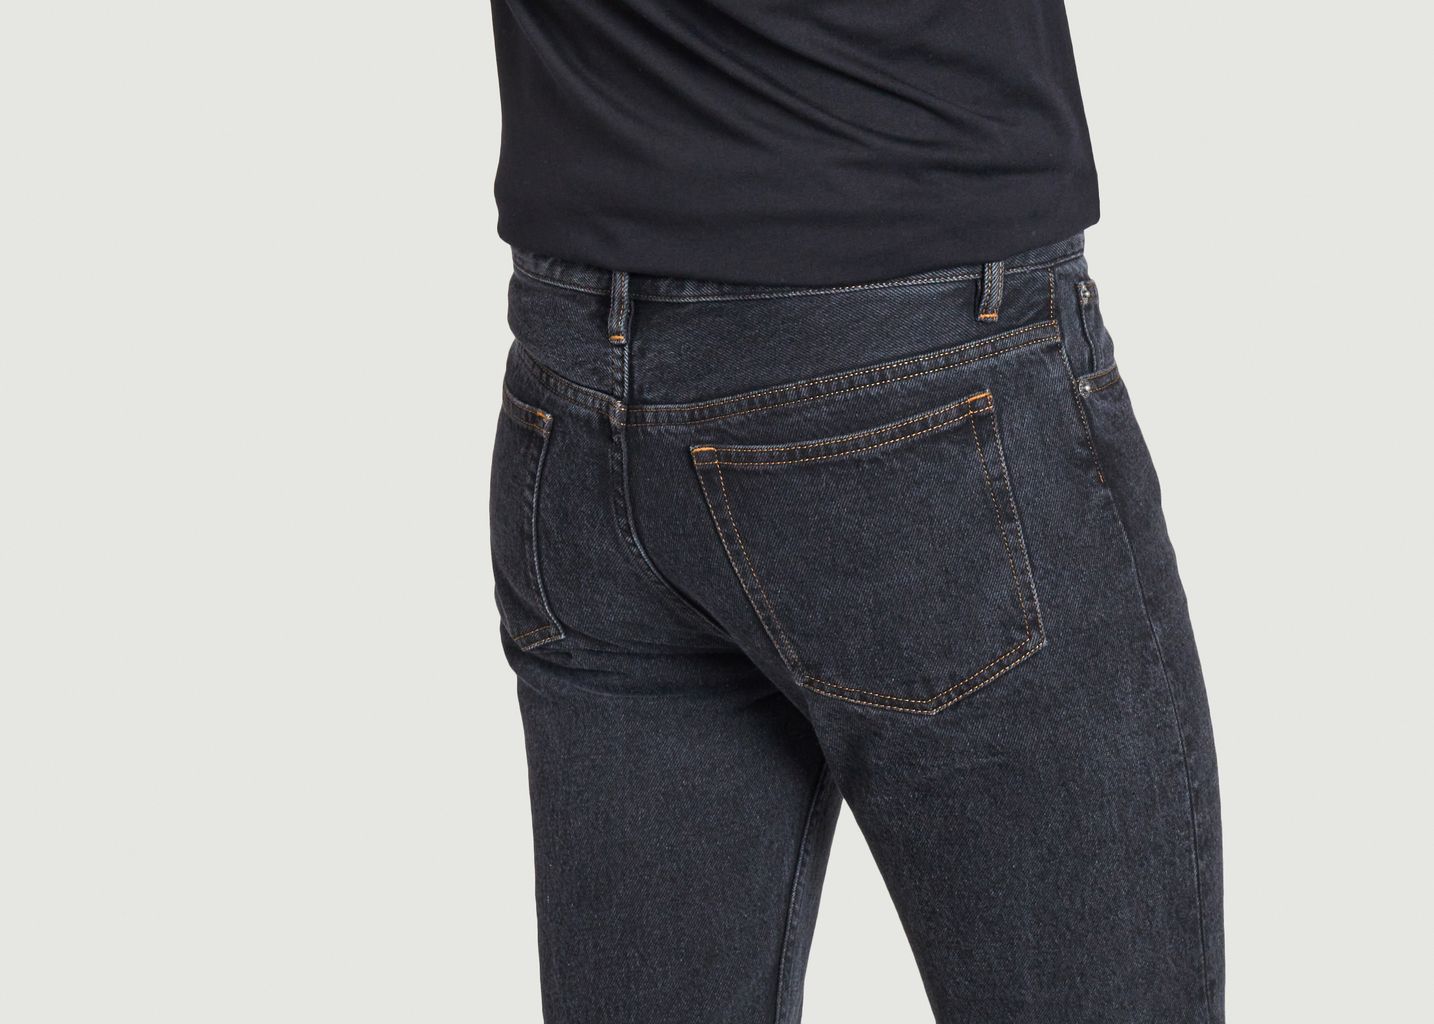 Petit New Standard Jeans - A.P.C.